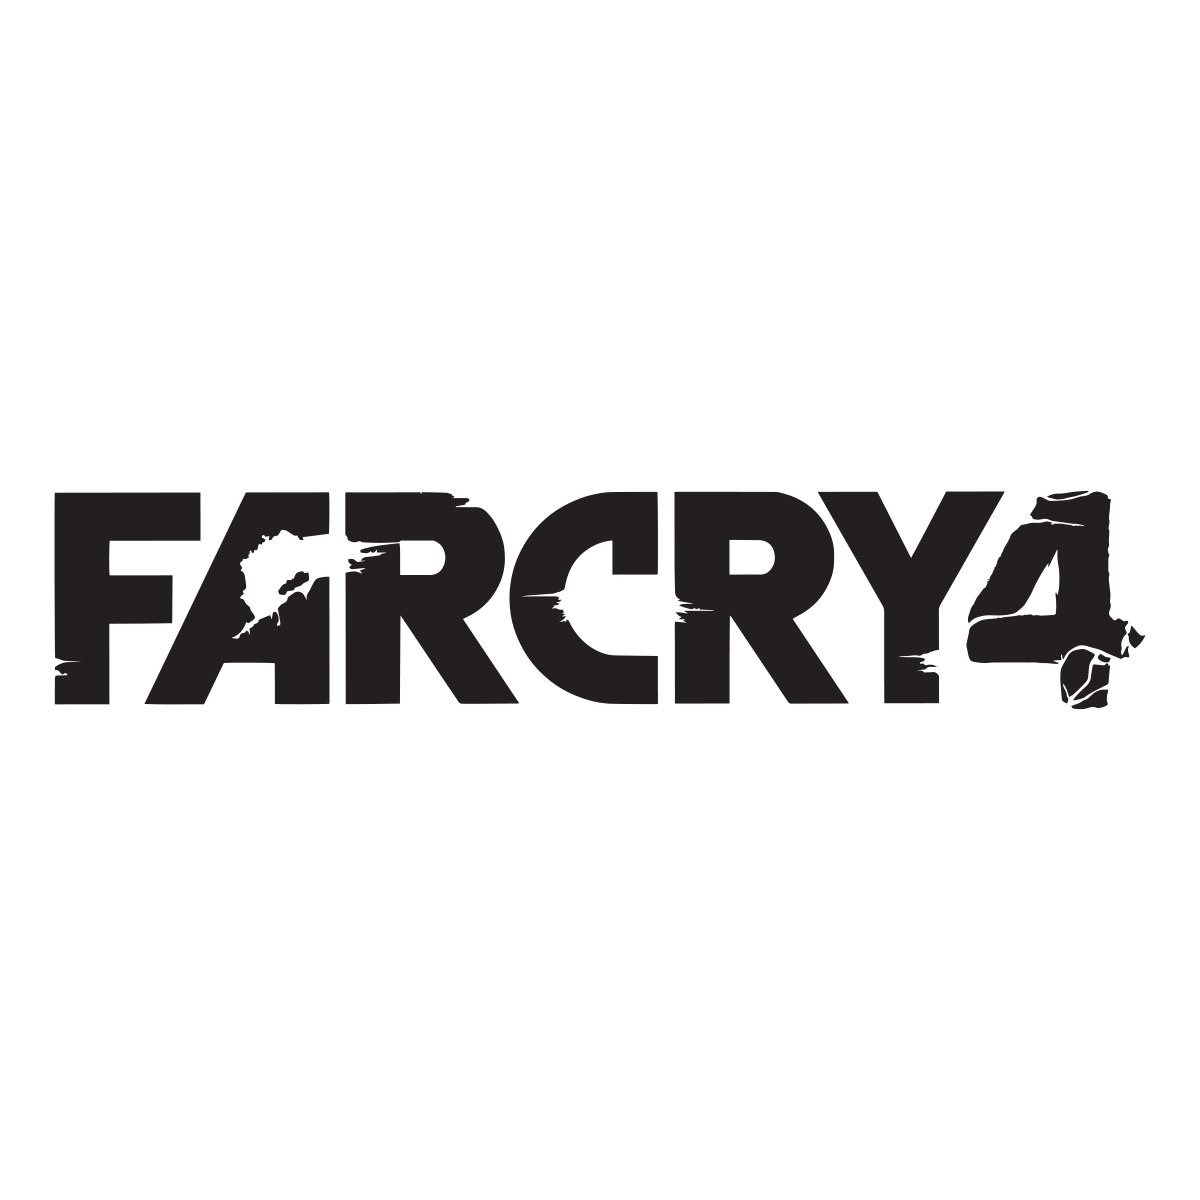 farcry 4 logo